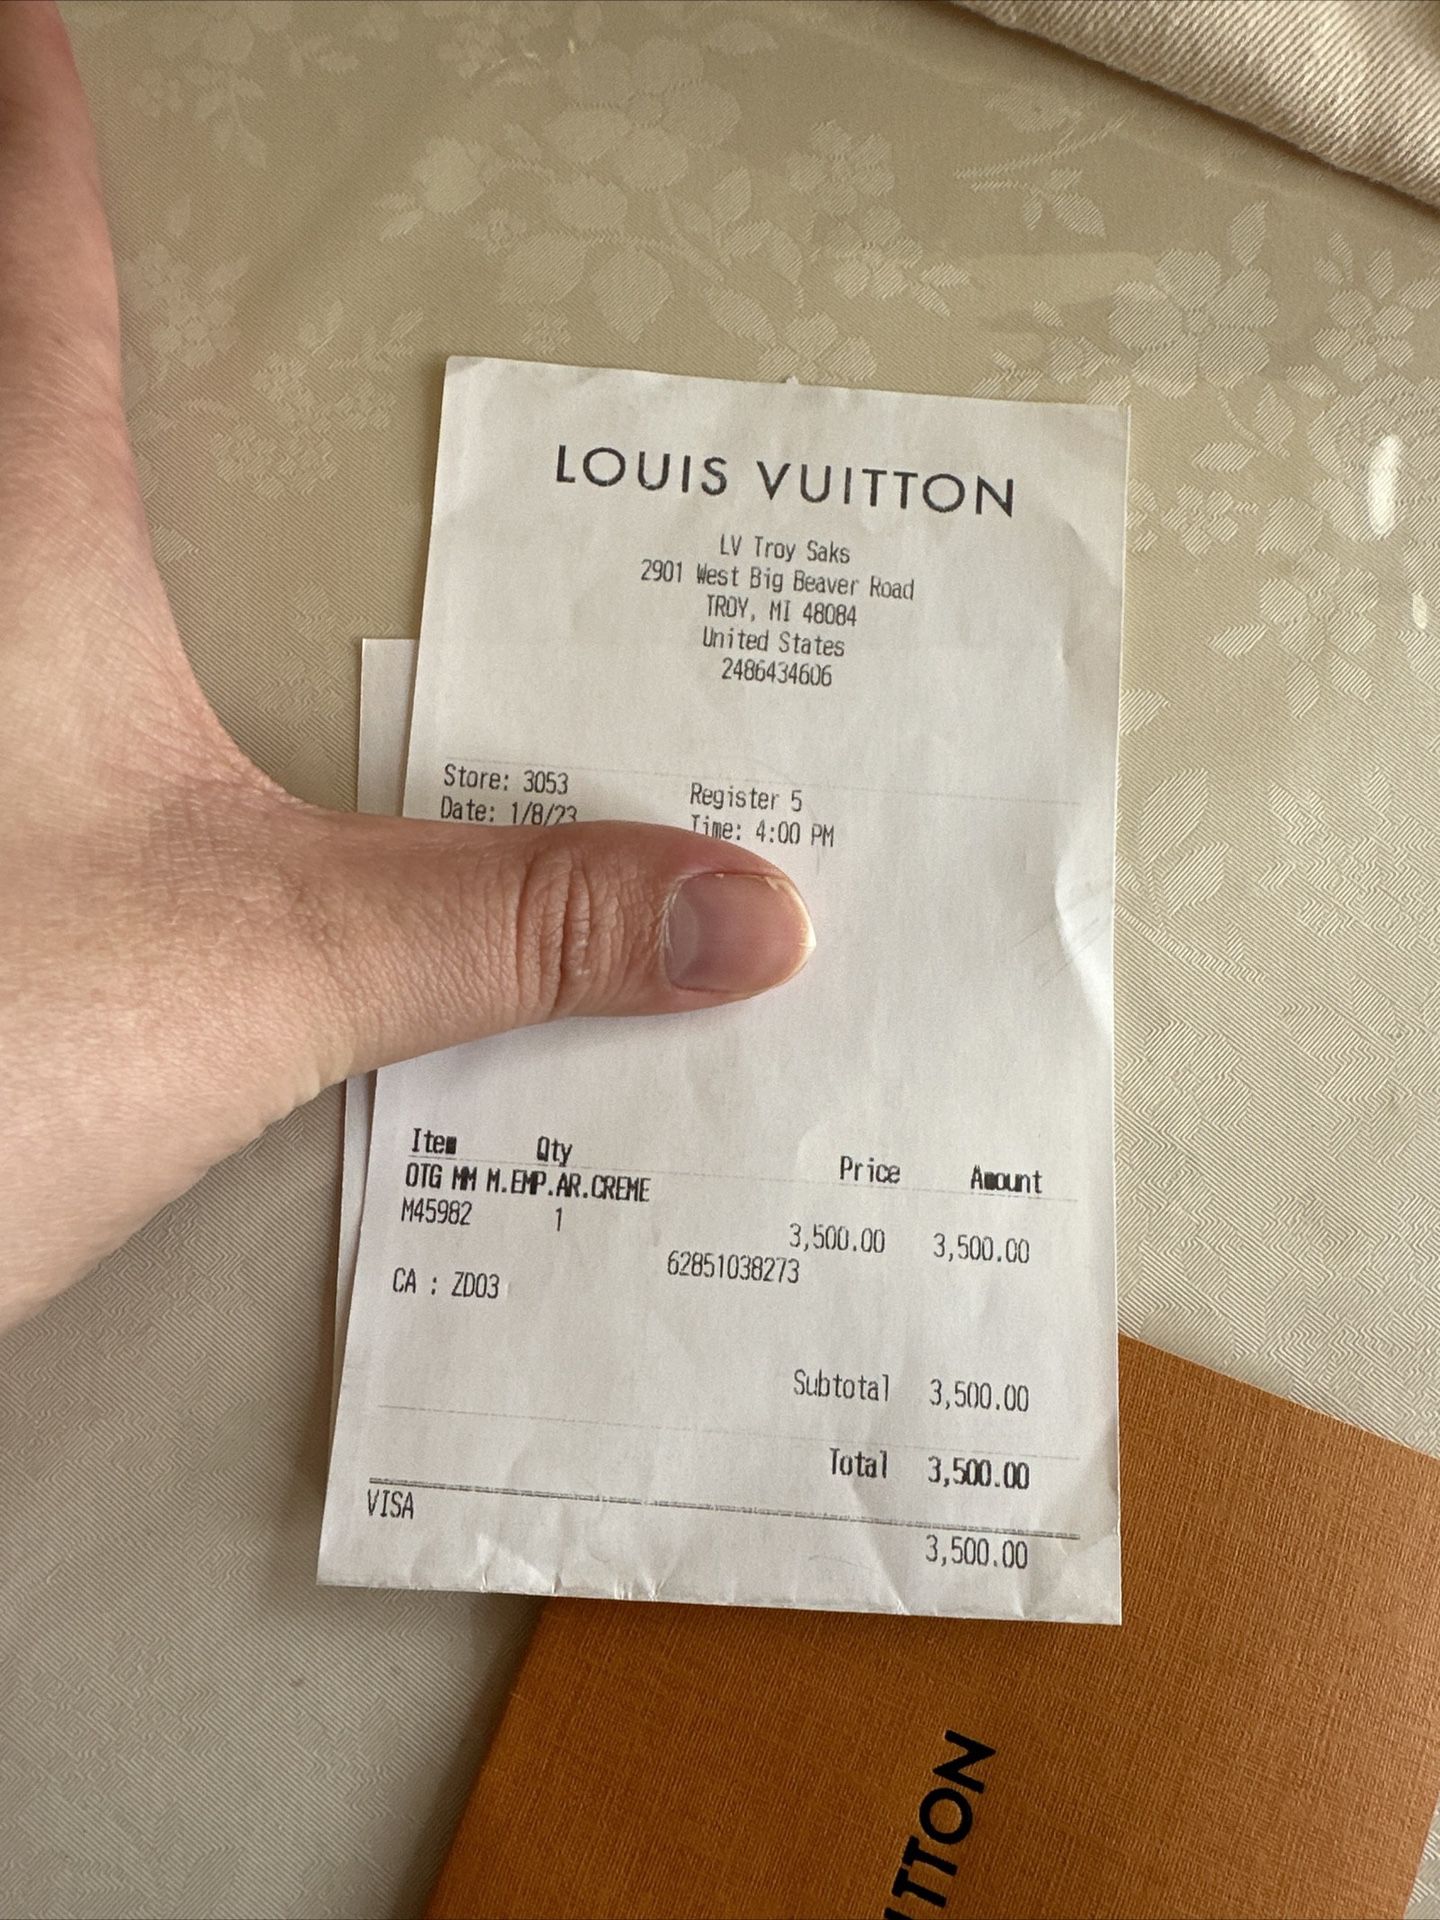 Louis Vuitton Troy Saks In Troy , Mi